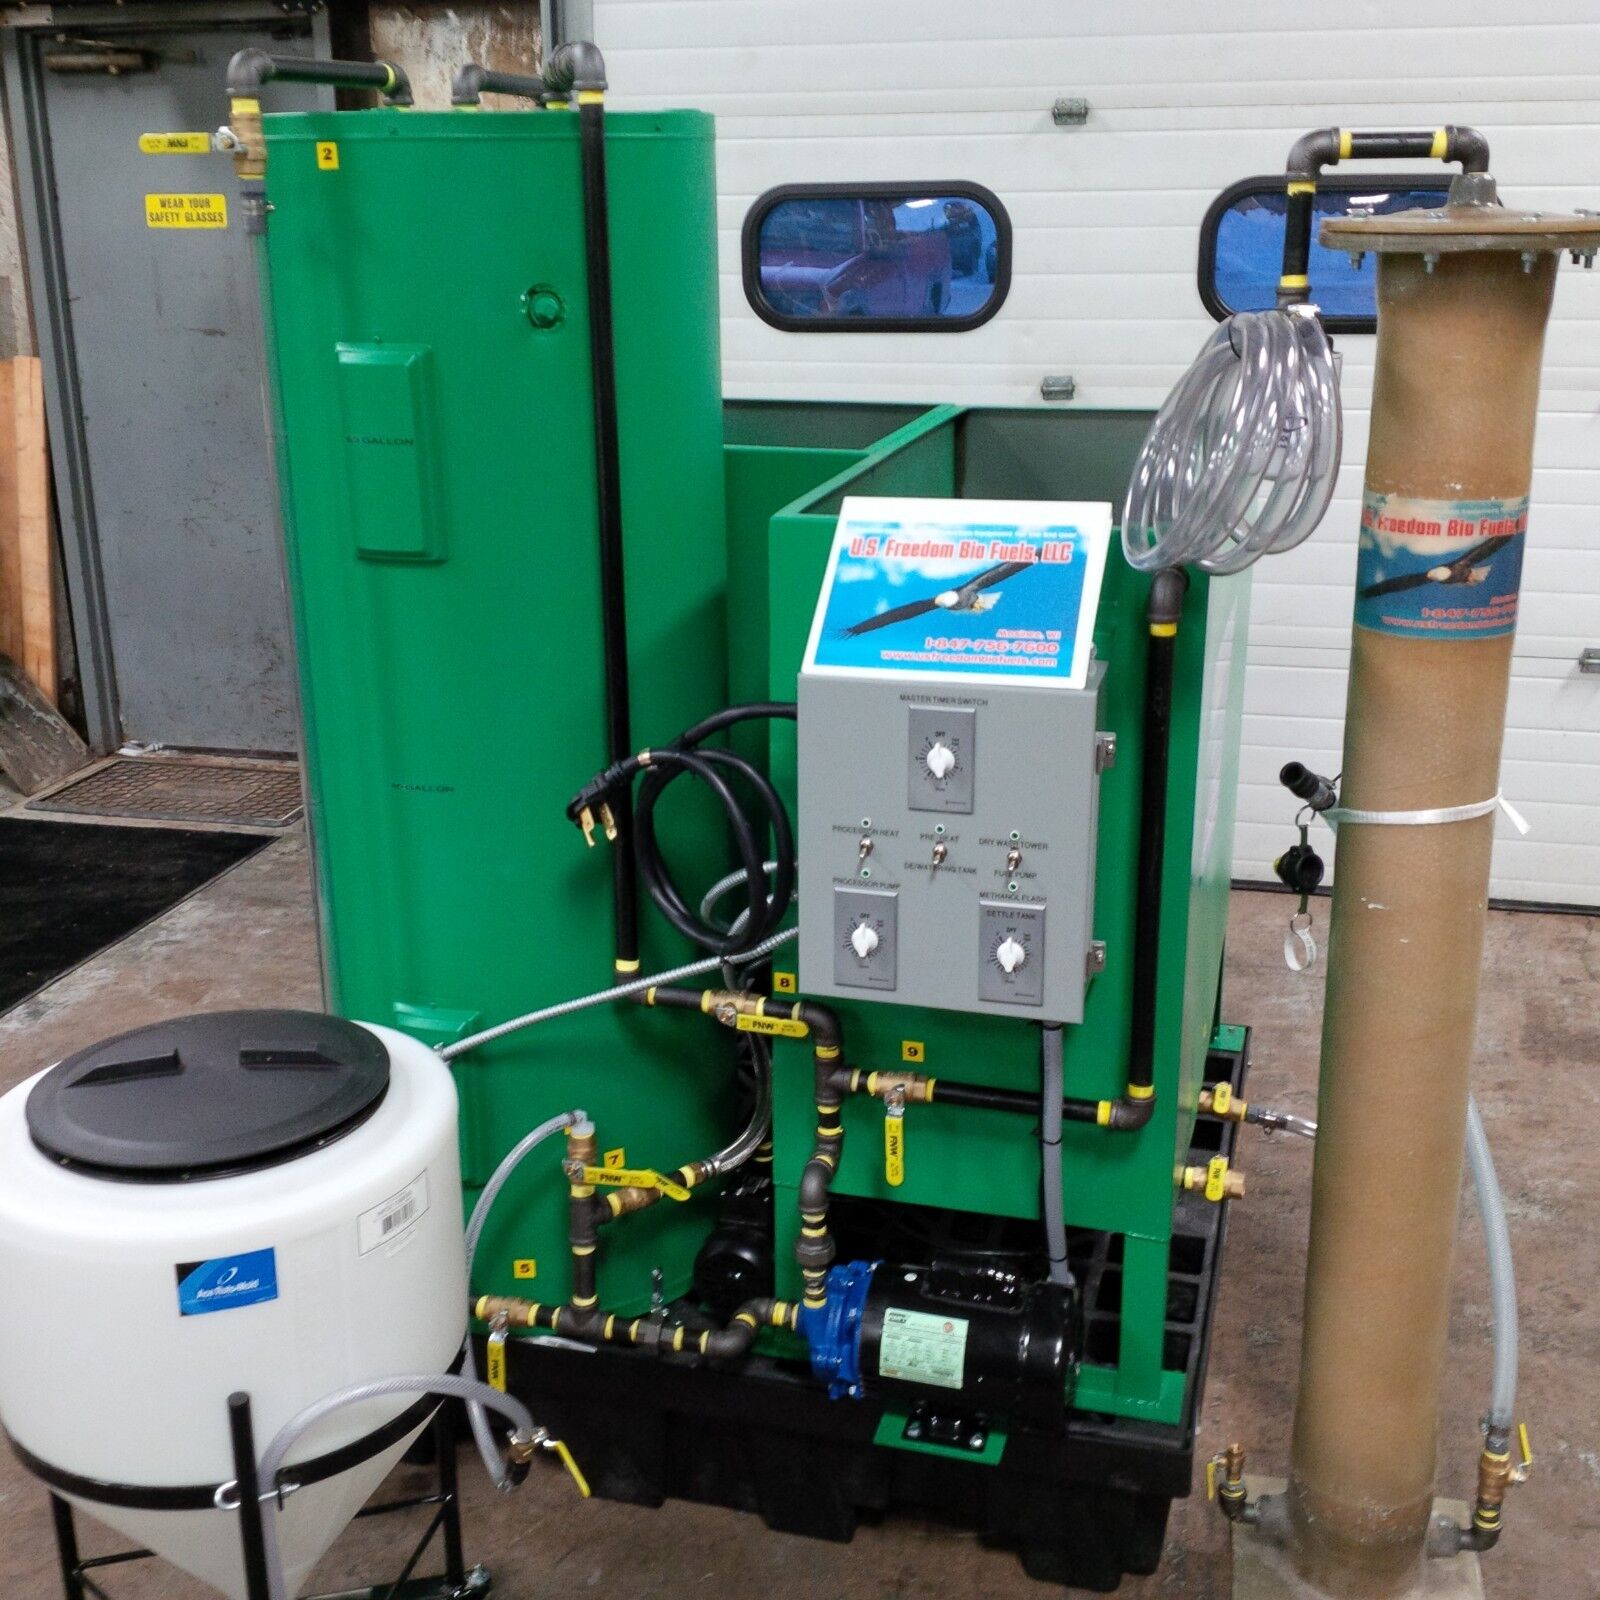 U.S. Freedom Bio Fuels,LLC Commercial Biodiesel Processor w? Dry Wash Technology